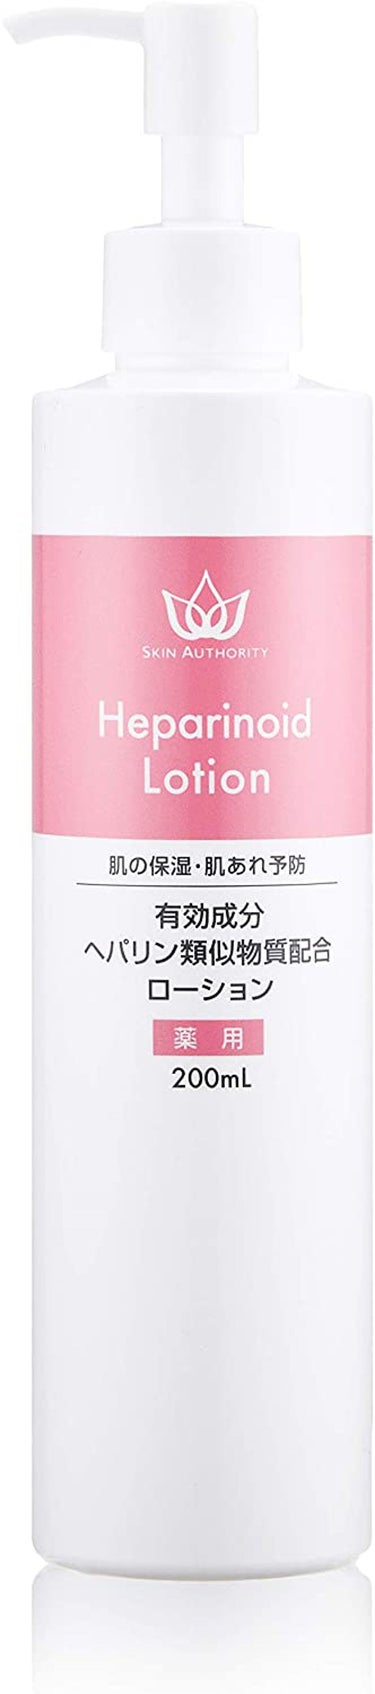 heparinoid lotion SKINAUTHORITY